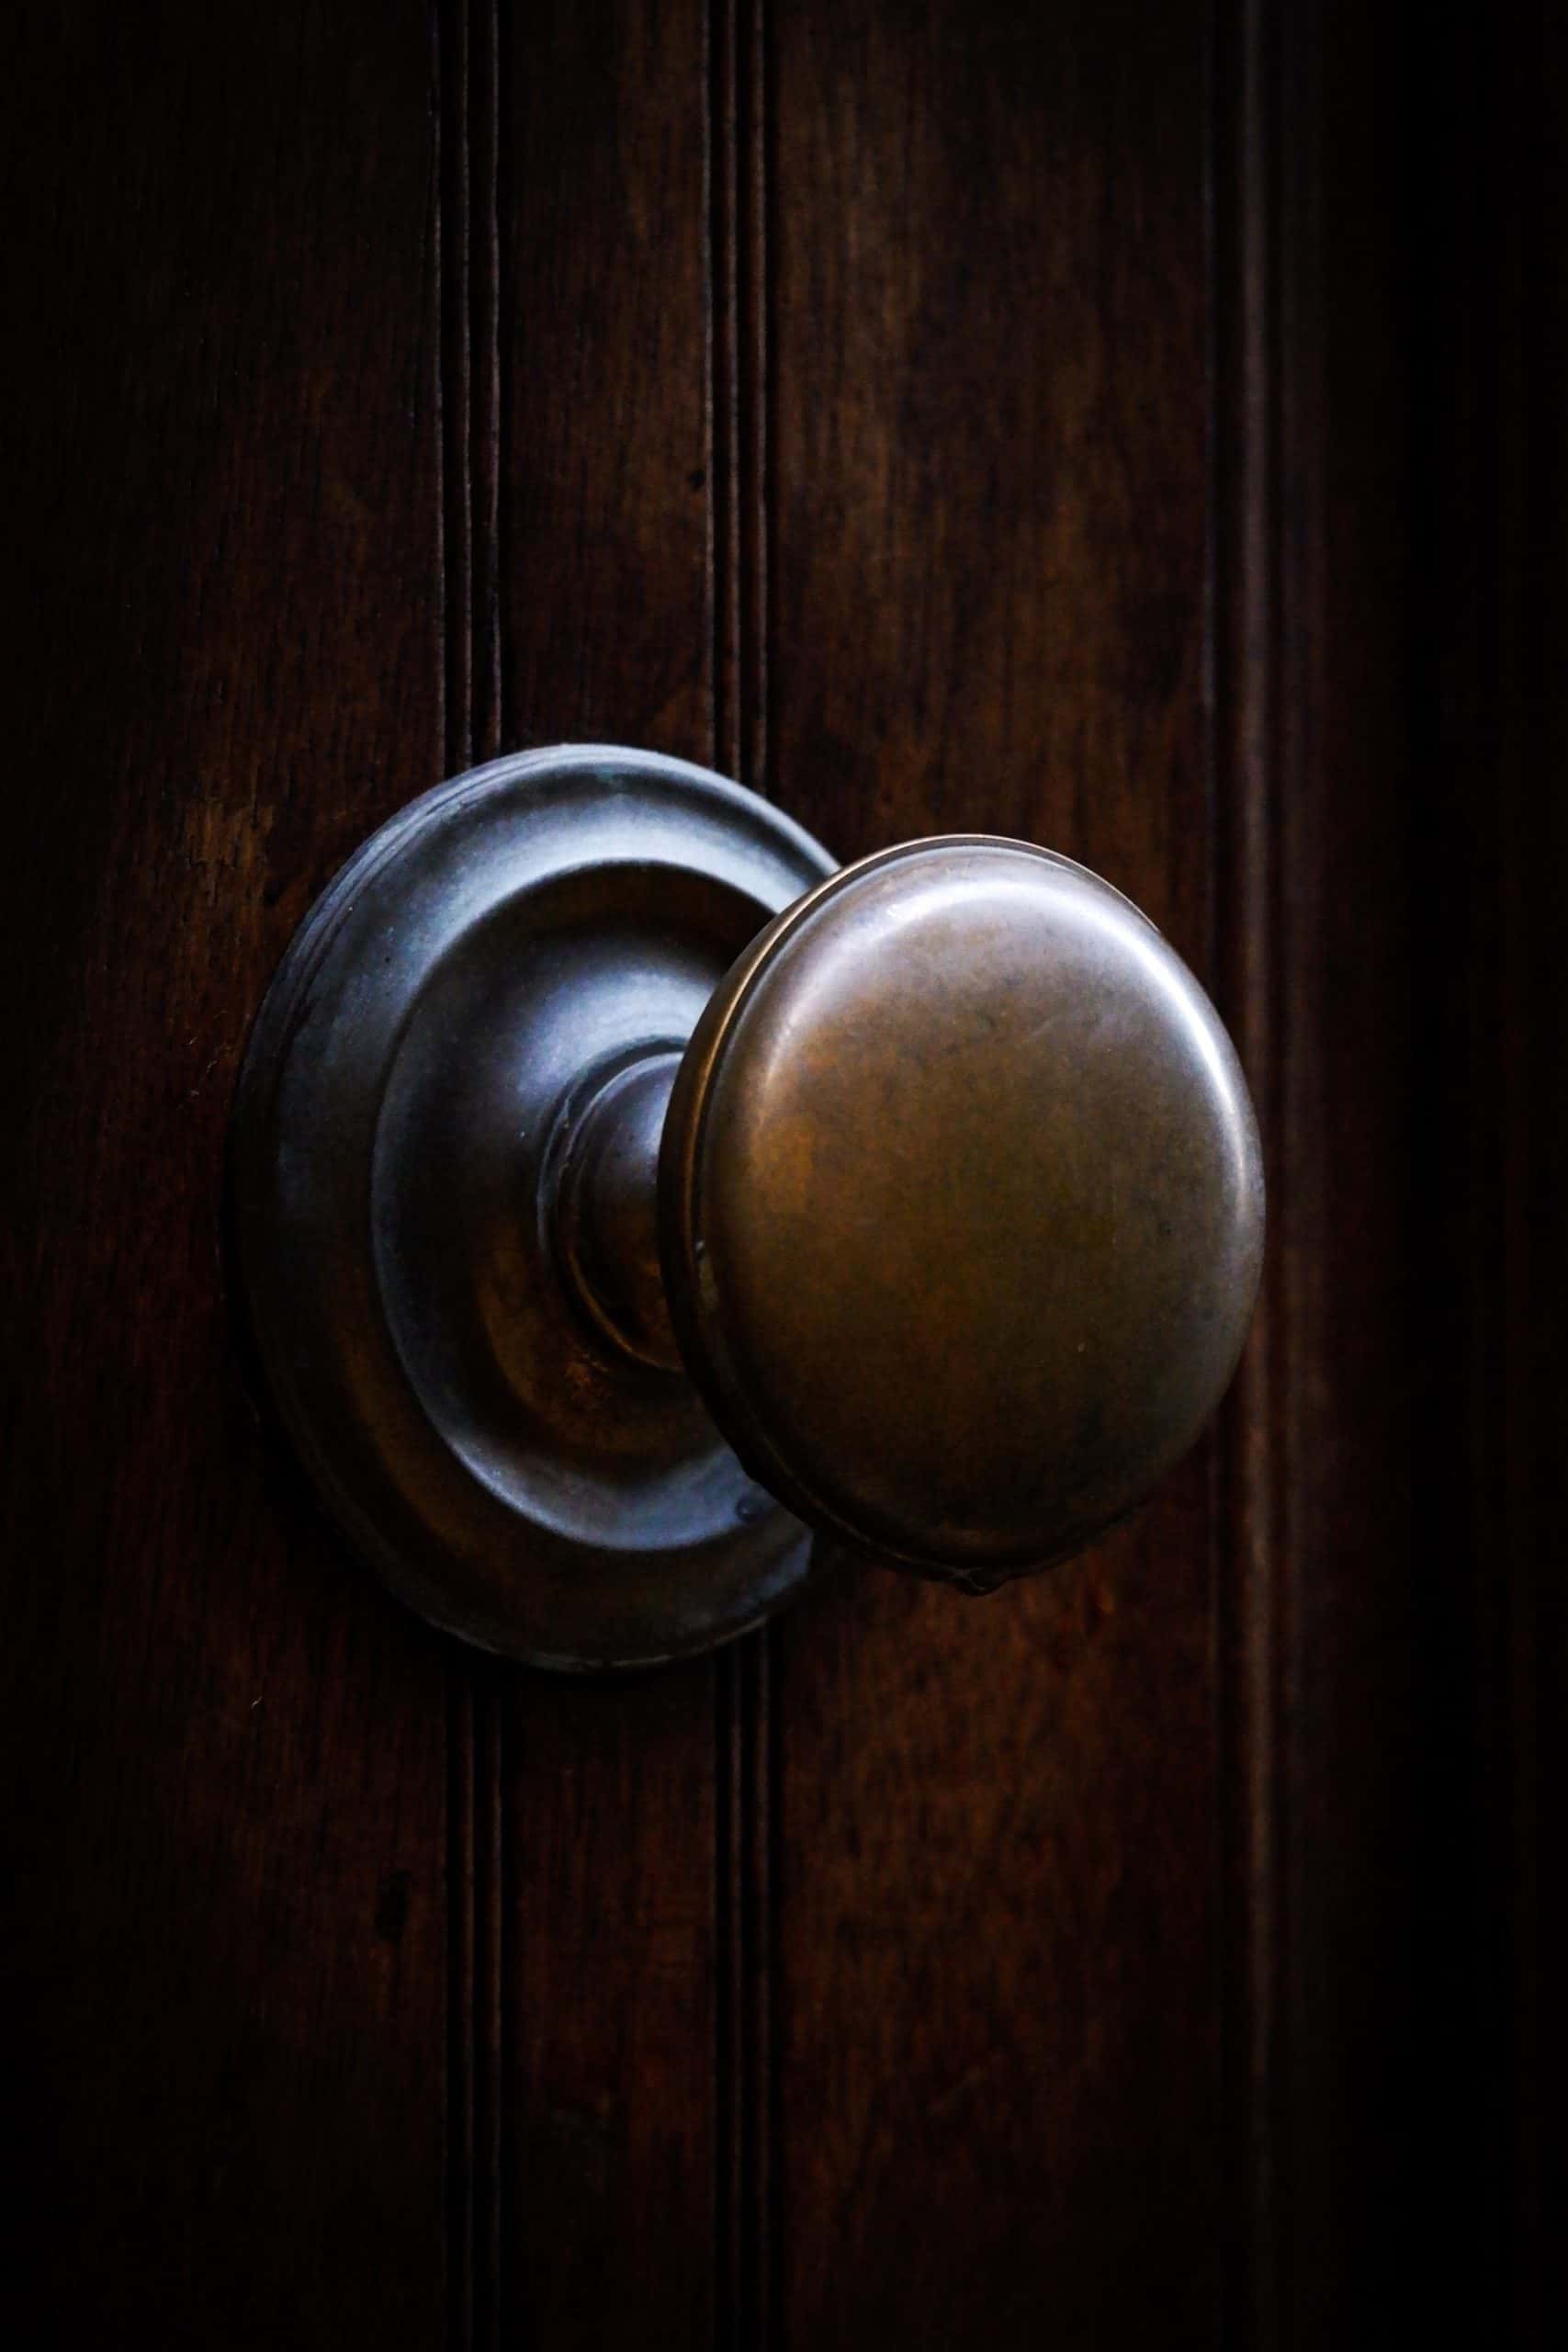 knobs versus door handles